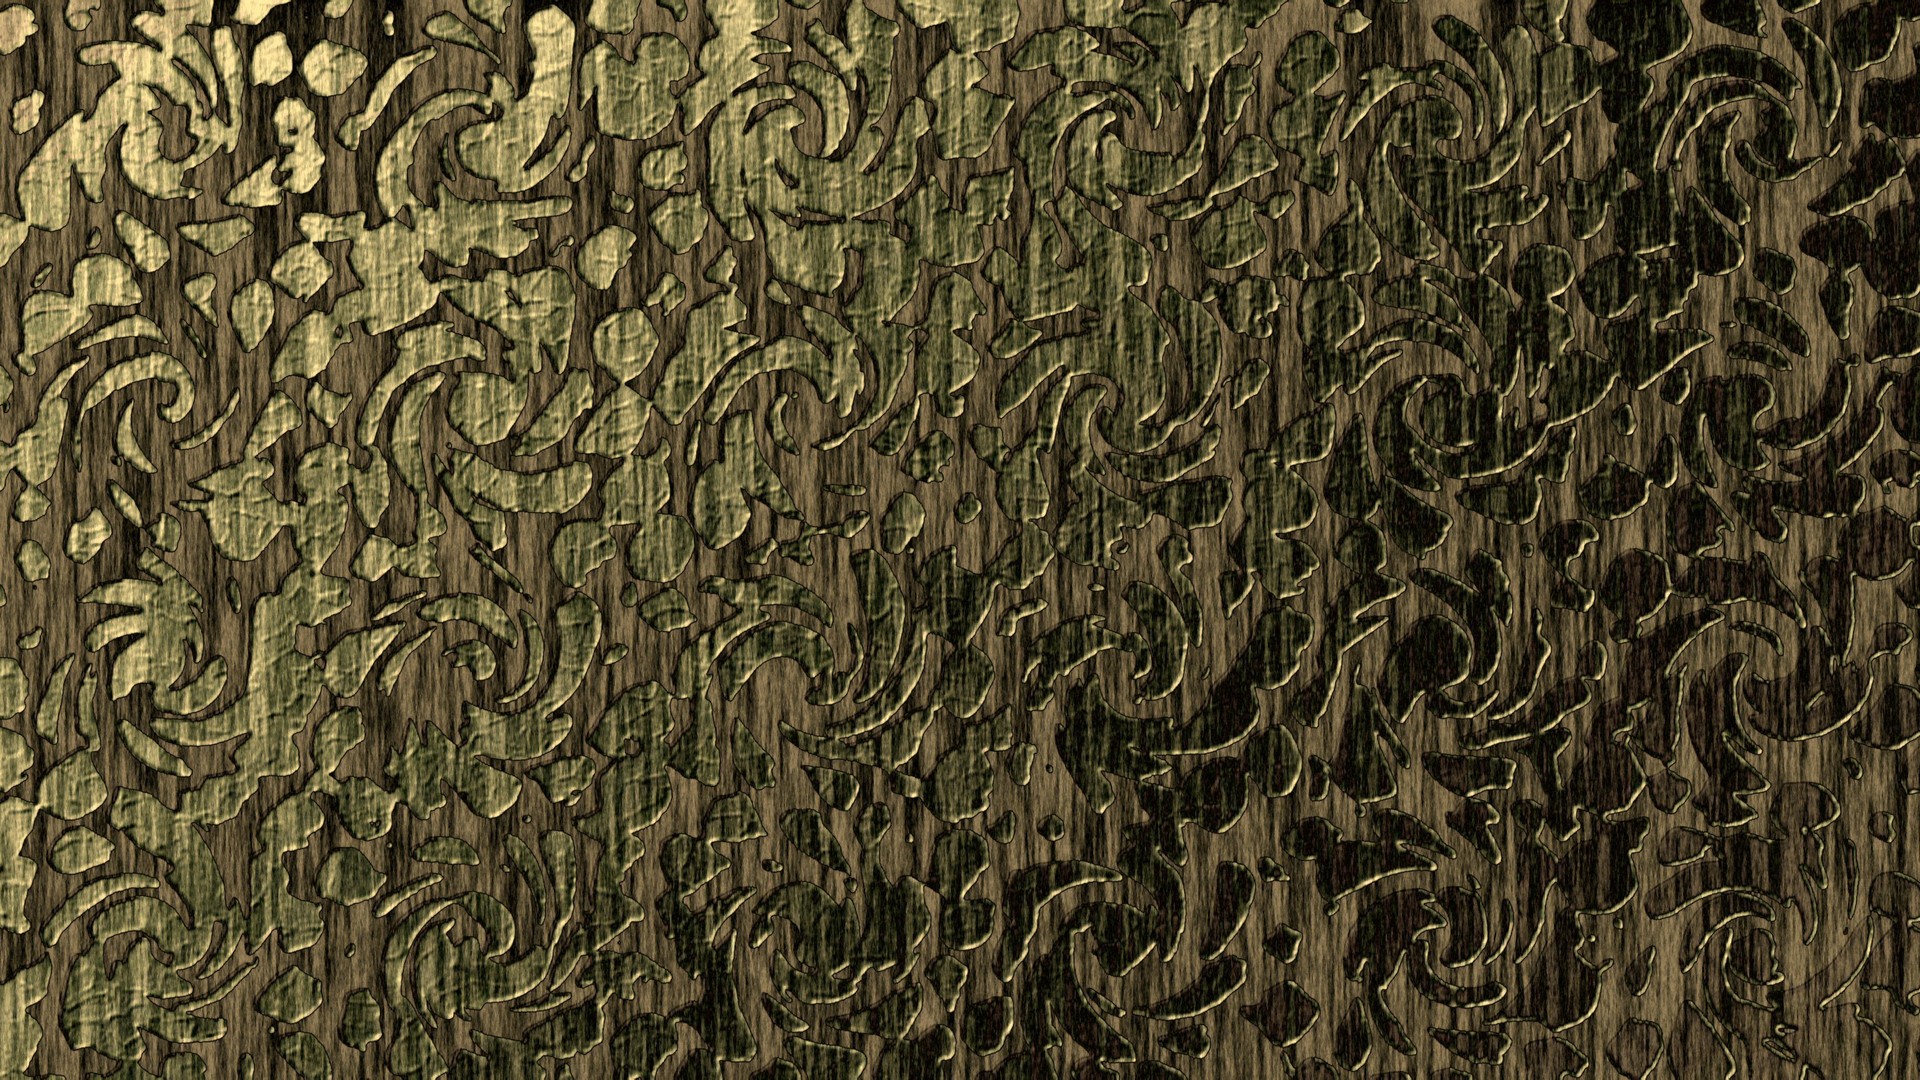 General 1920x1080 pattern texture digital art